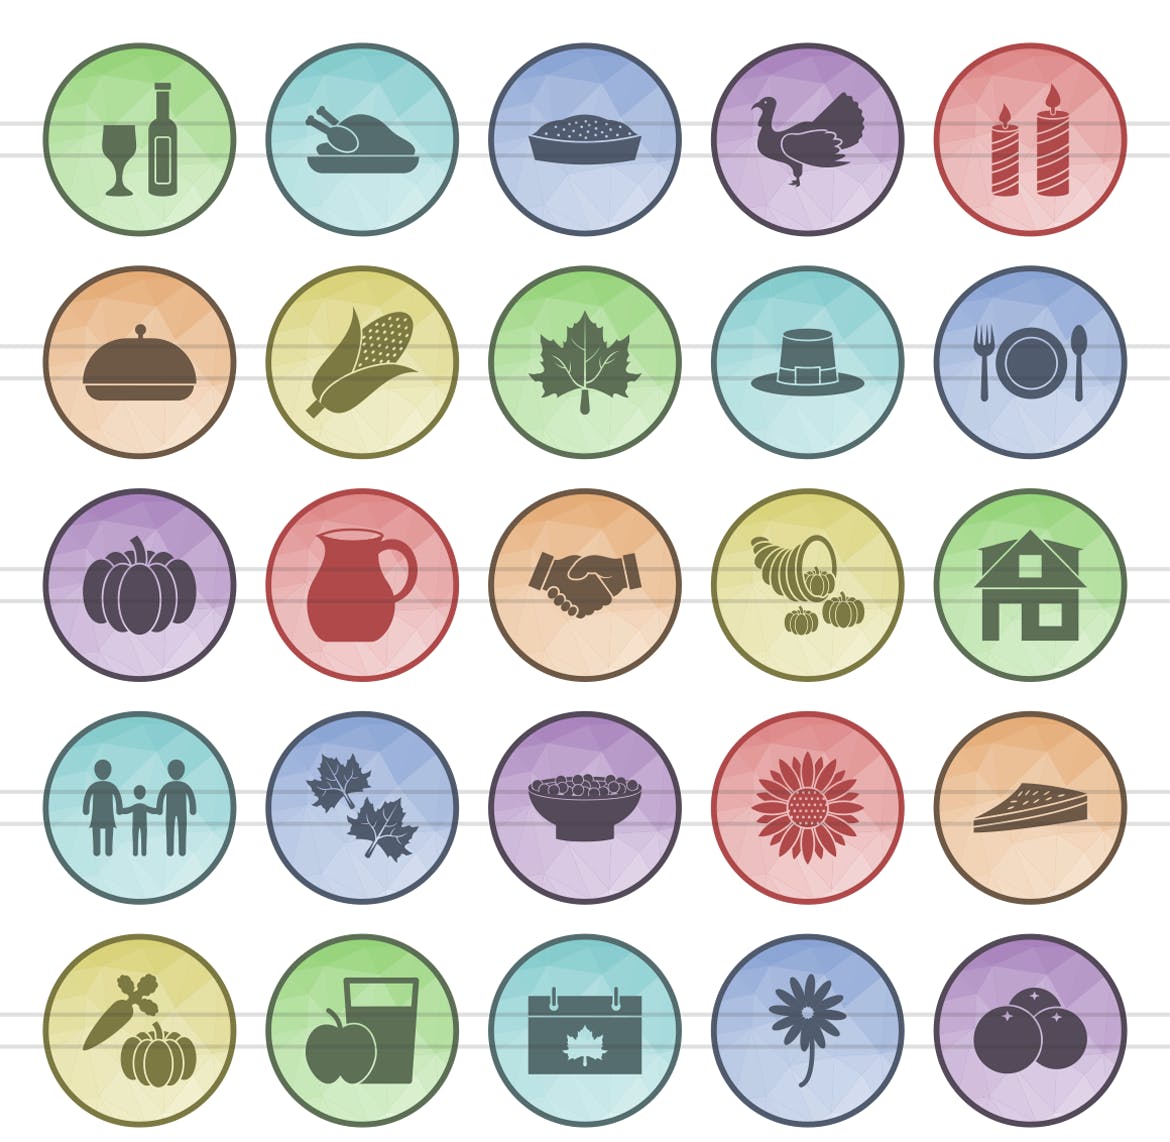 50枚感恩节主题圆形16图库精选图标素材 50 Thanksgiving Filled Low Poly Icons插图(1)